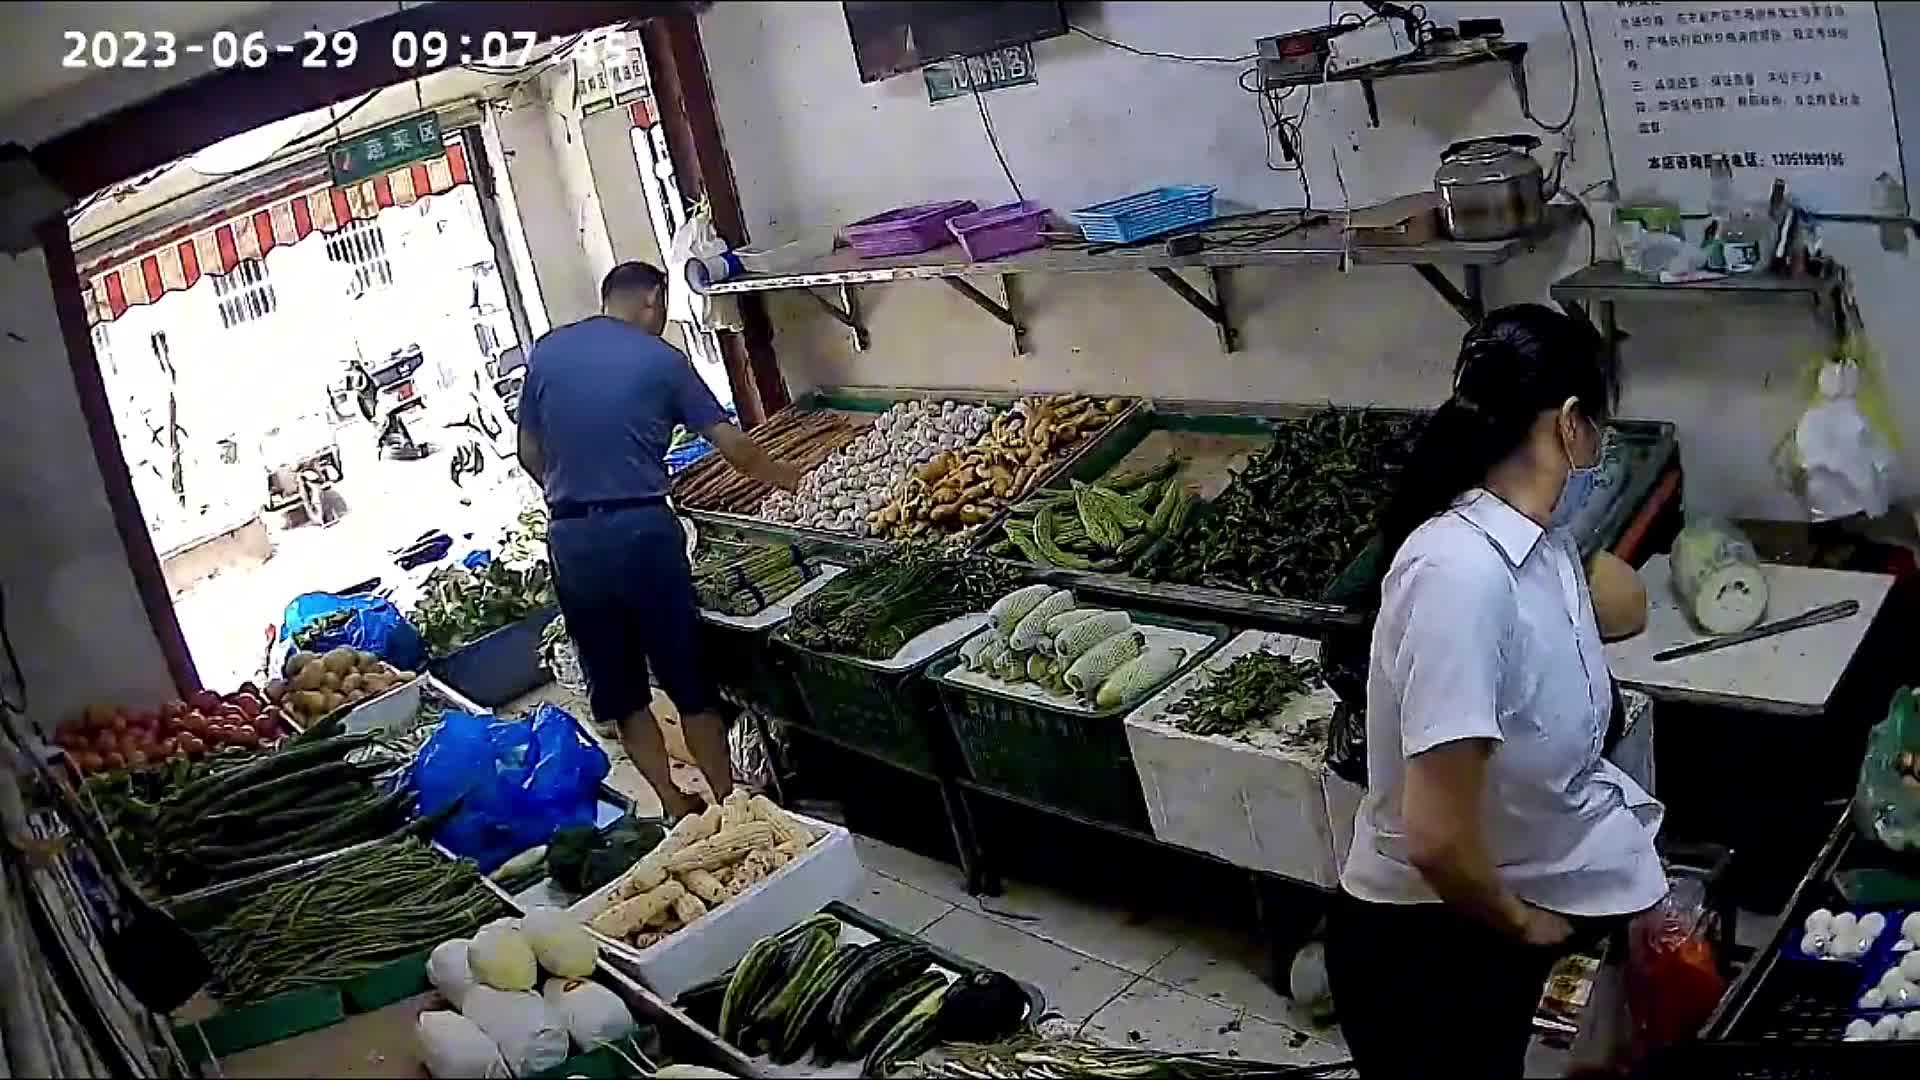 Video - Clip: Trộm đồ nhét vào trong quần, người phụ nữ bị bắt tại trận